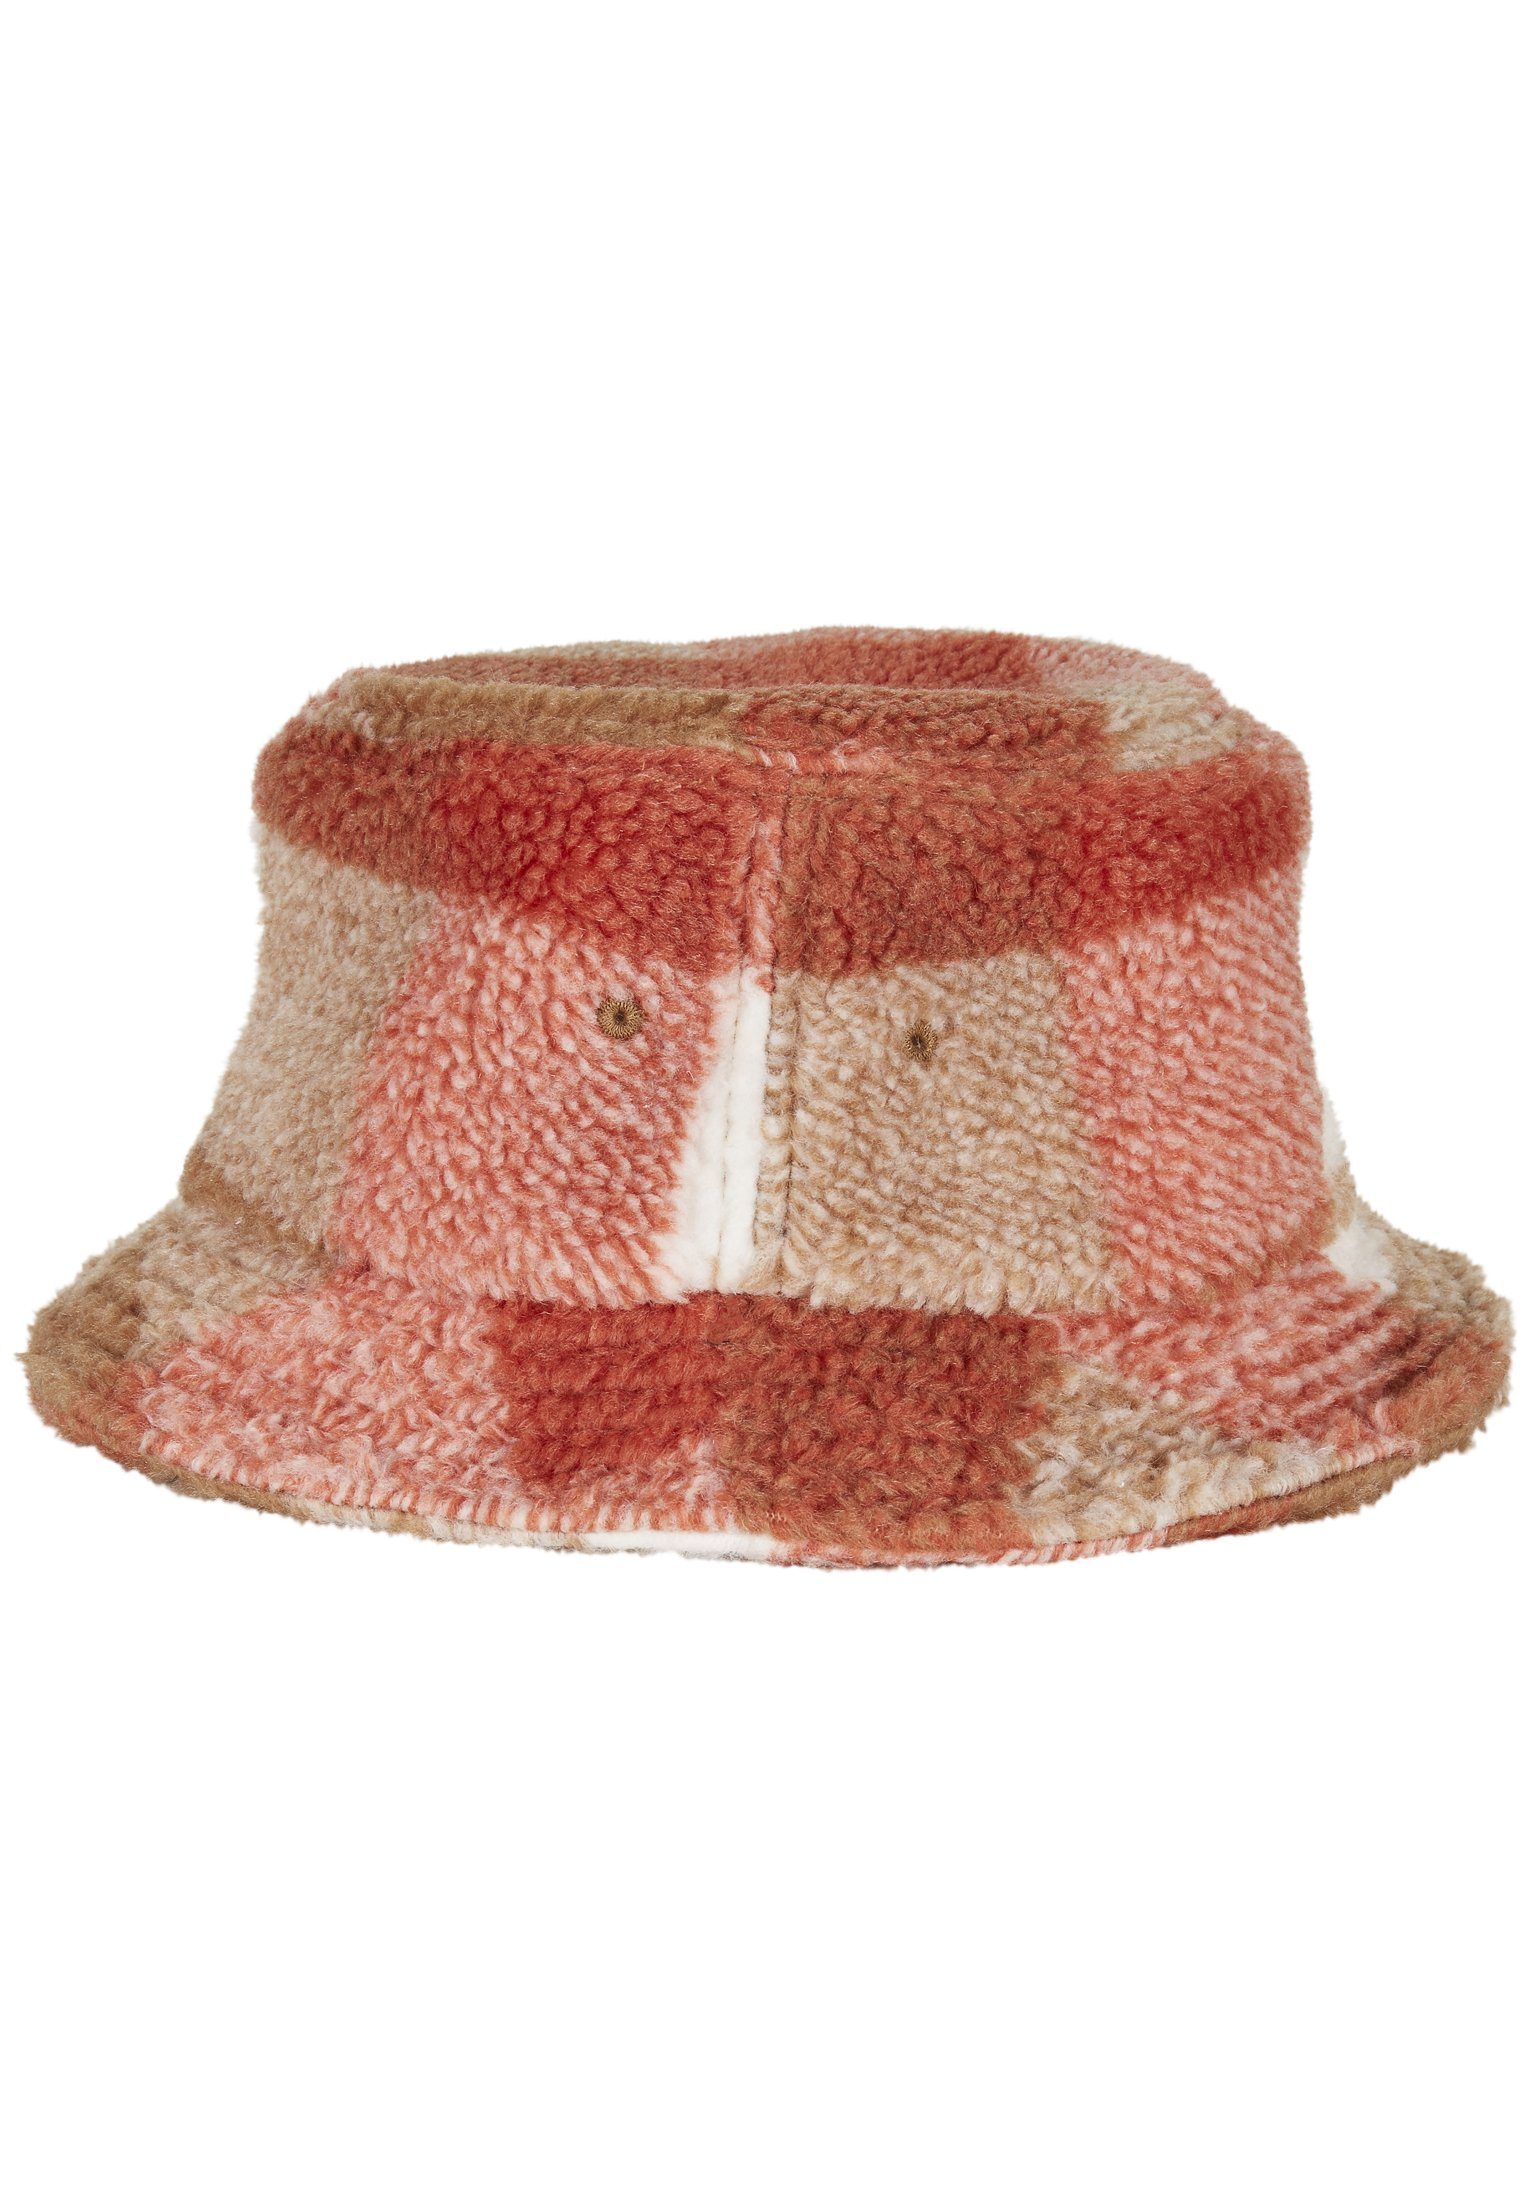 Flexfit Flex Cap Hat Hat whitesand/toffee Bucket Bucket Check Sherpa